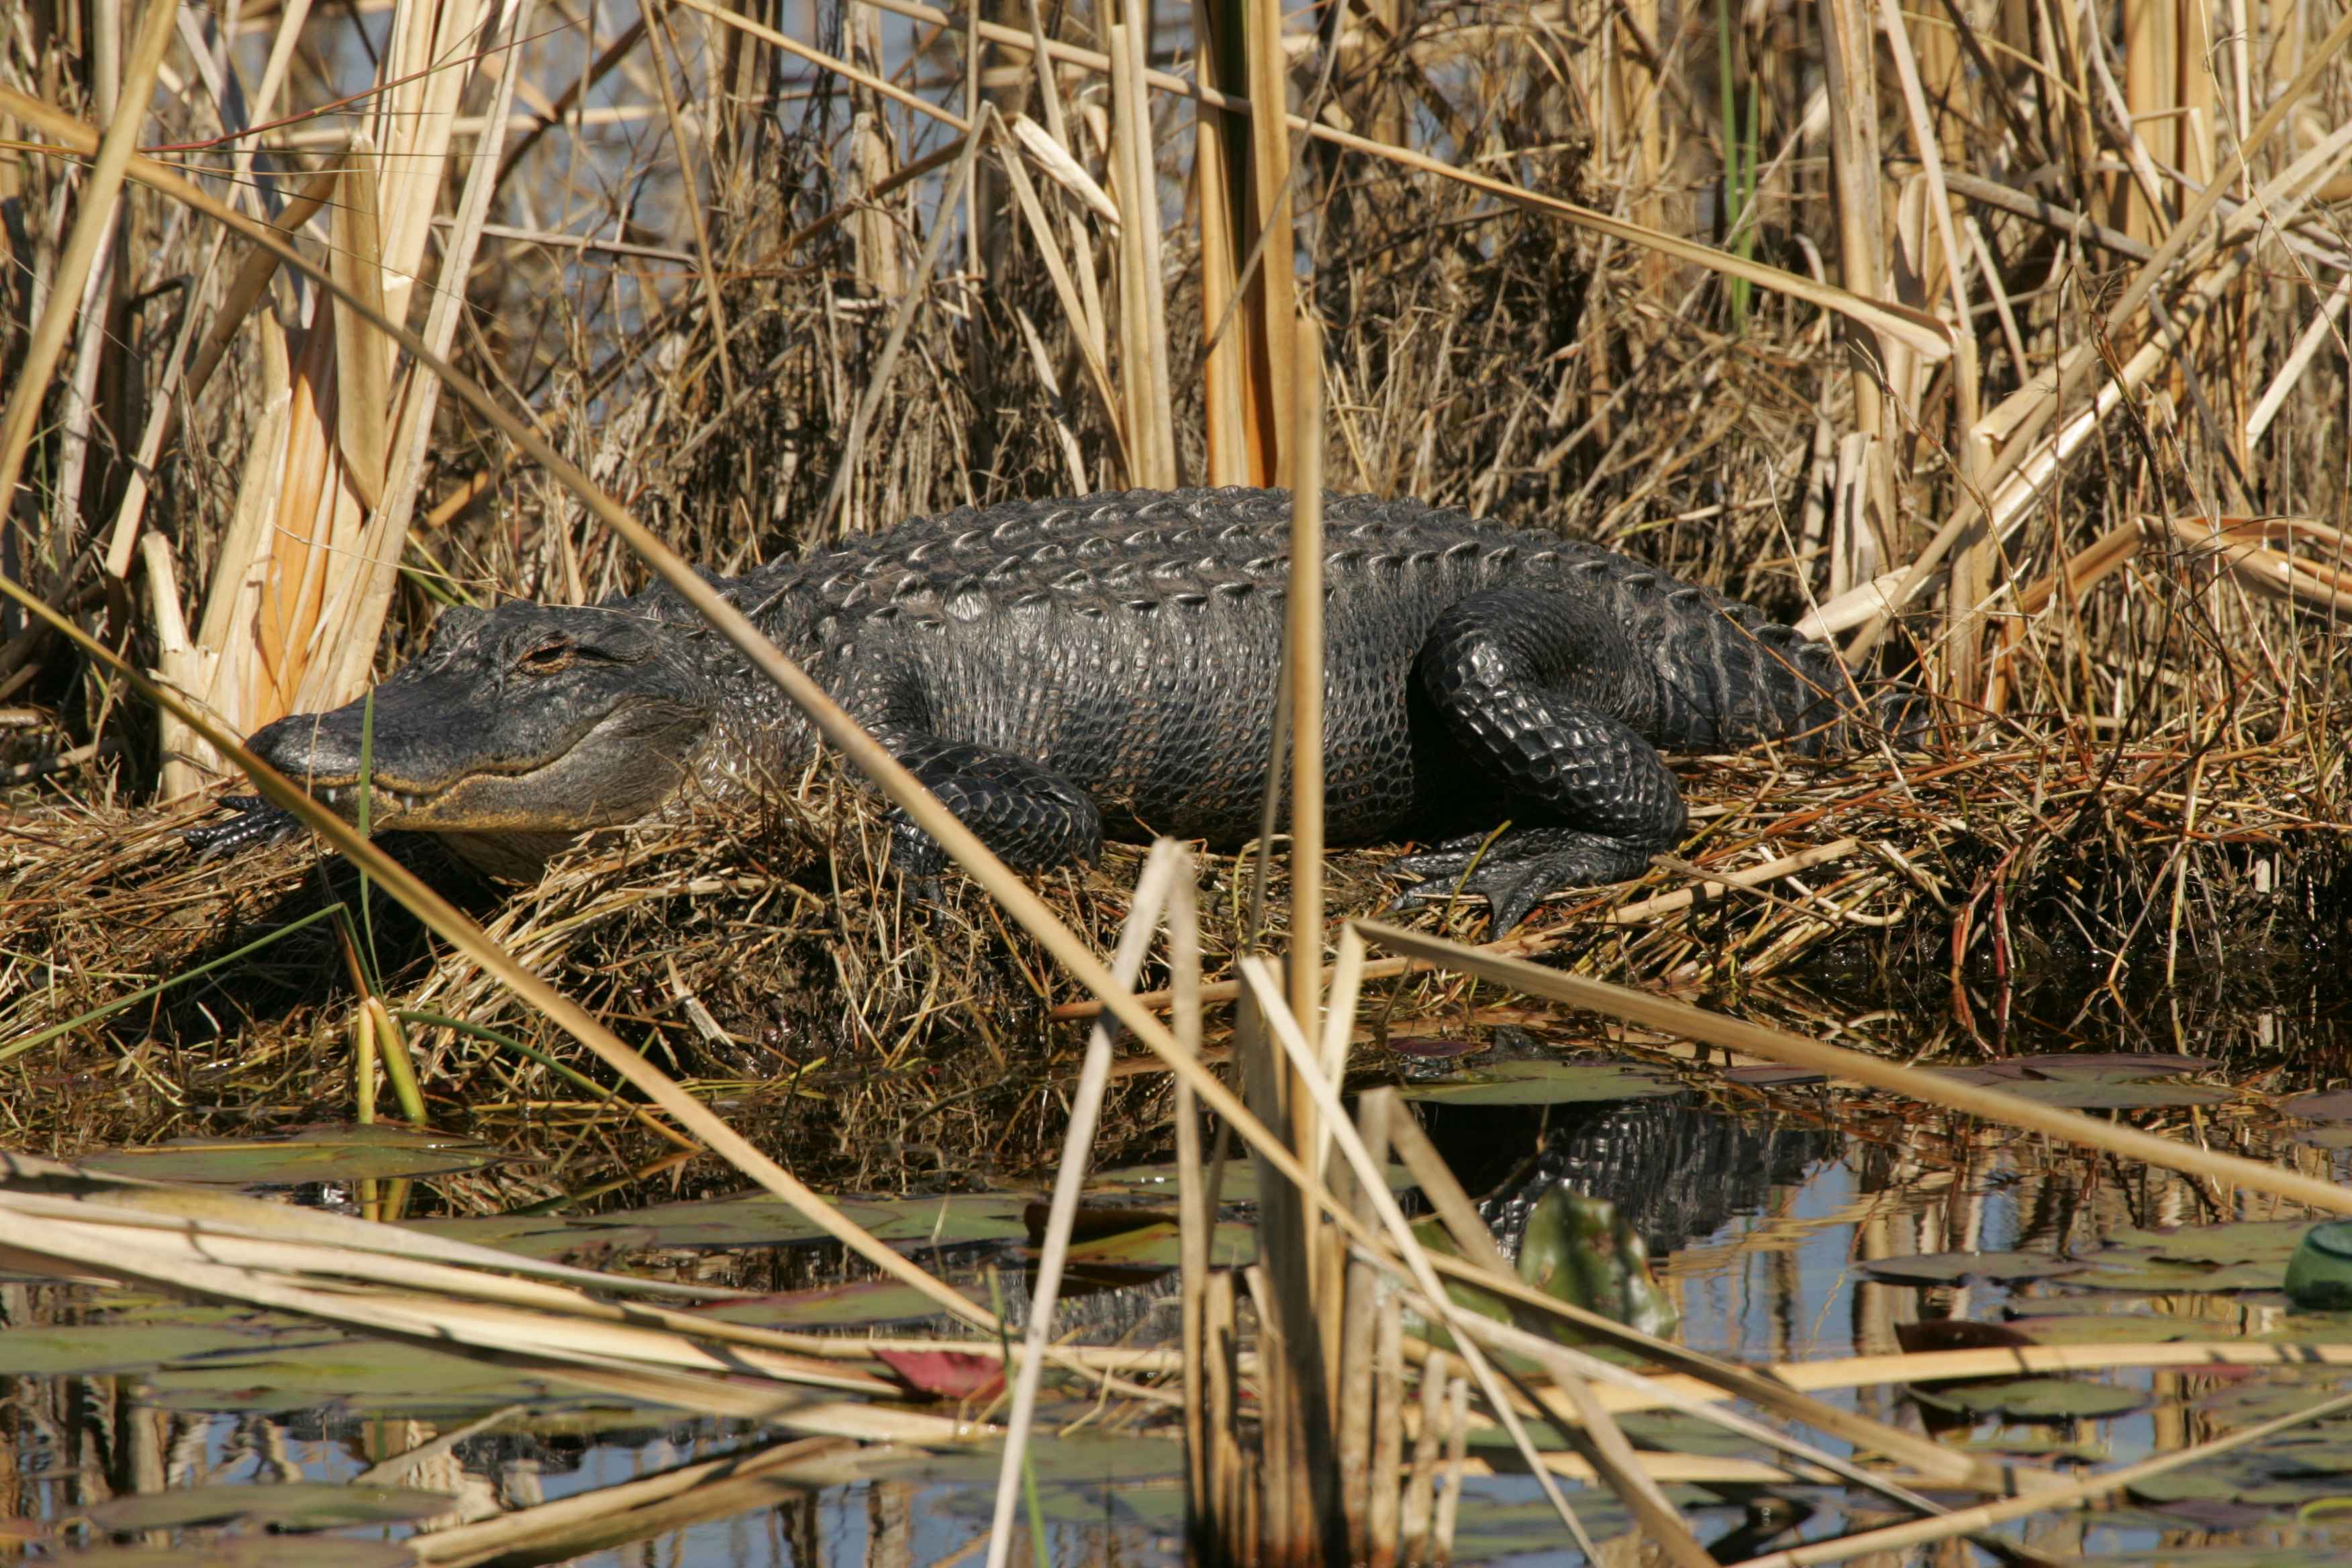 Alligator alligator mississippiensis sunning itself